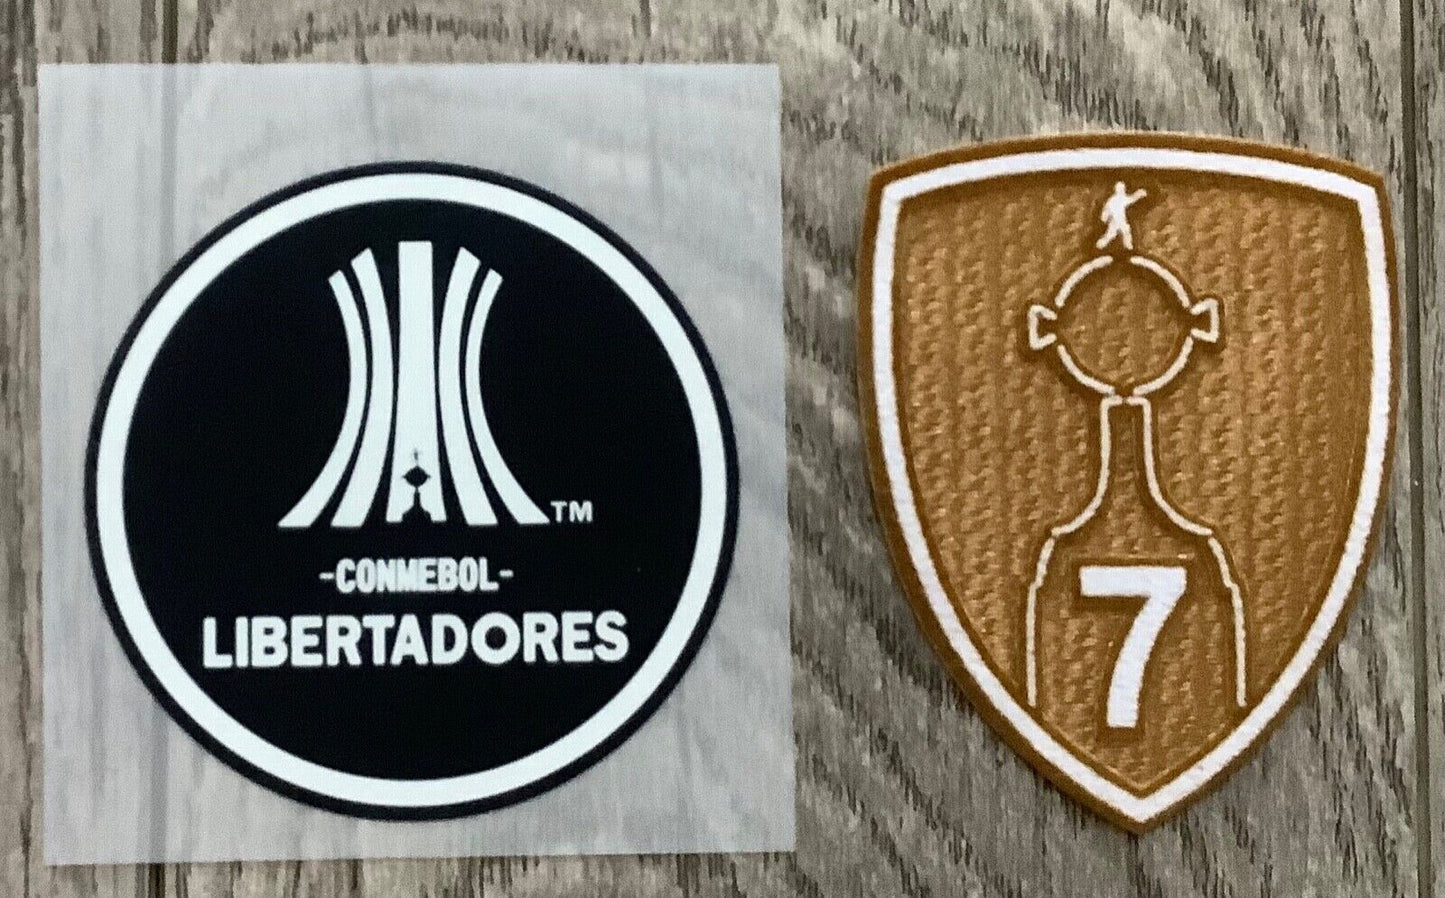 Copa Libertadores Badge Set